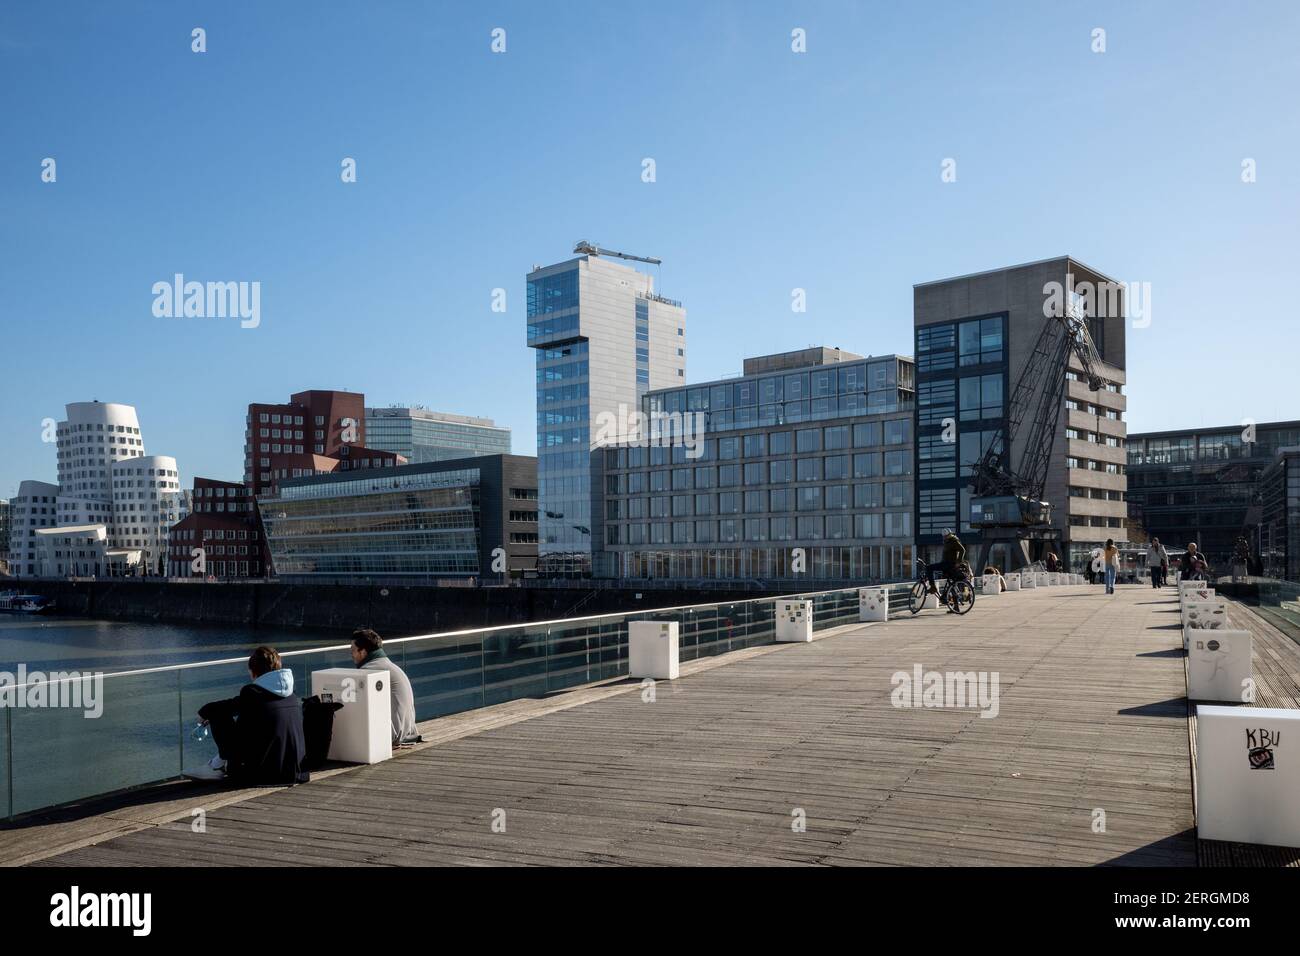 Sonnige Außenlandschaft auf der Brücke im Medienhafen, Fußgängerbrücke, am Medienhafen und Hintergrund des von Frank Gehry entworfenen Gebäudes. Stockfoto